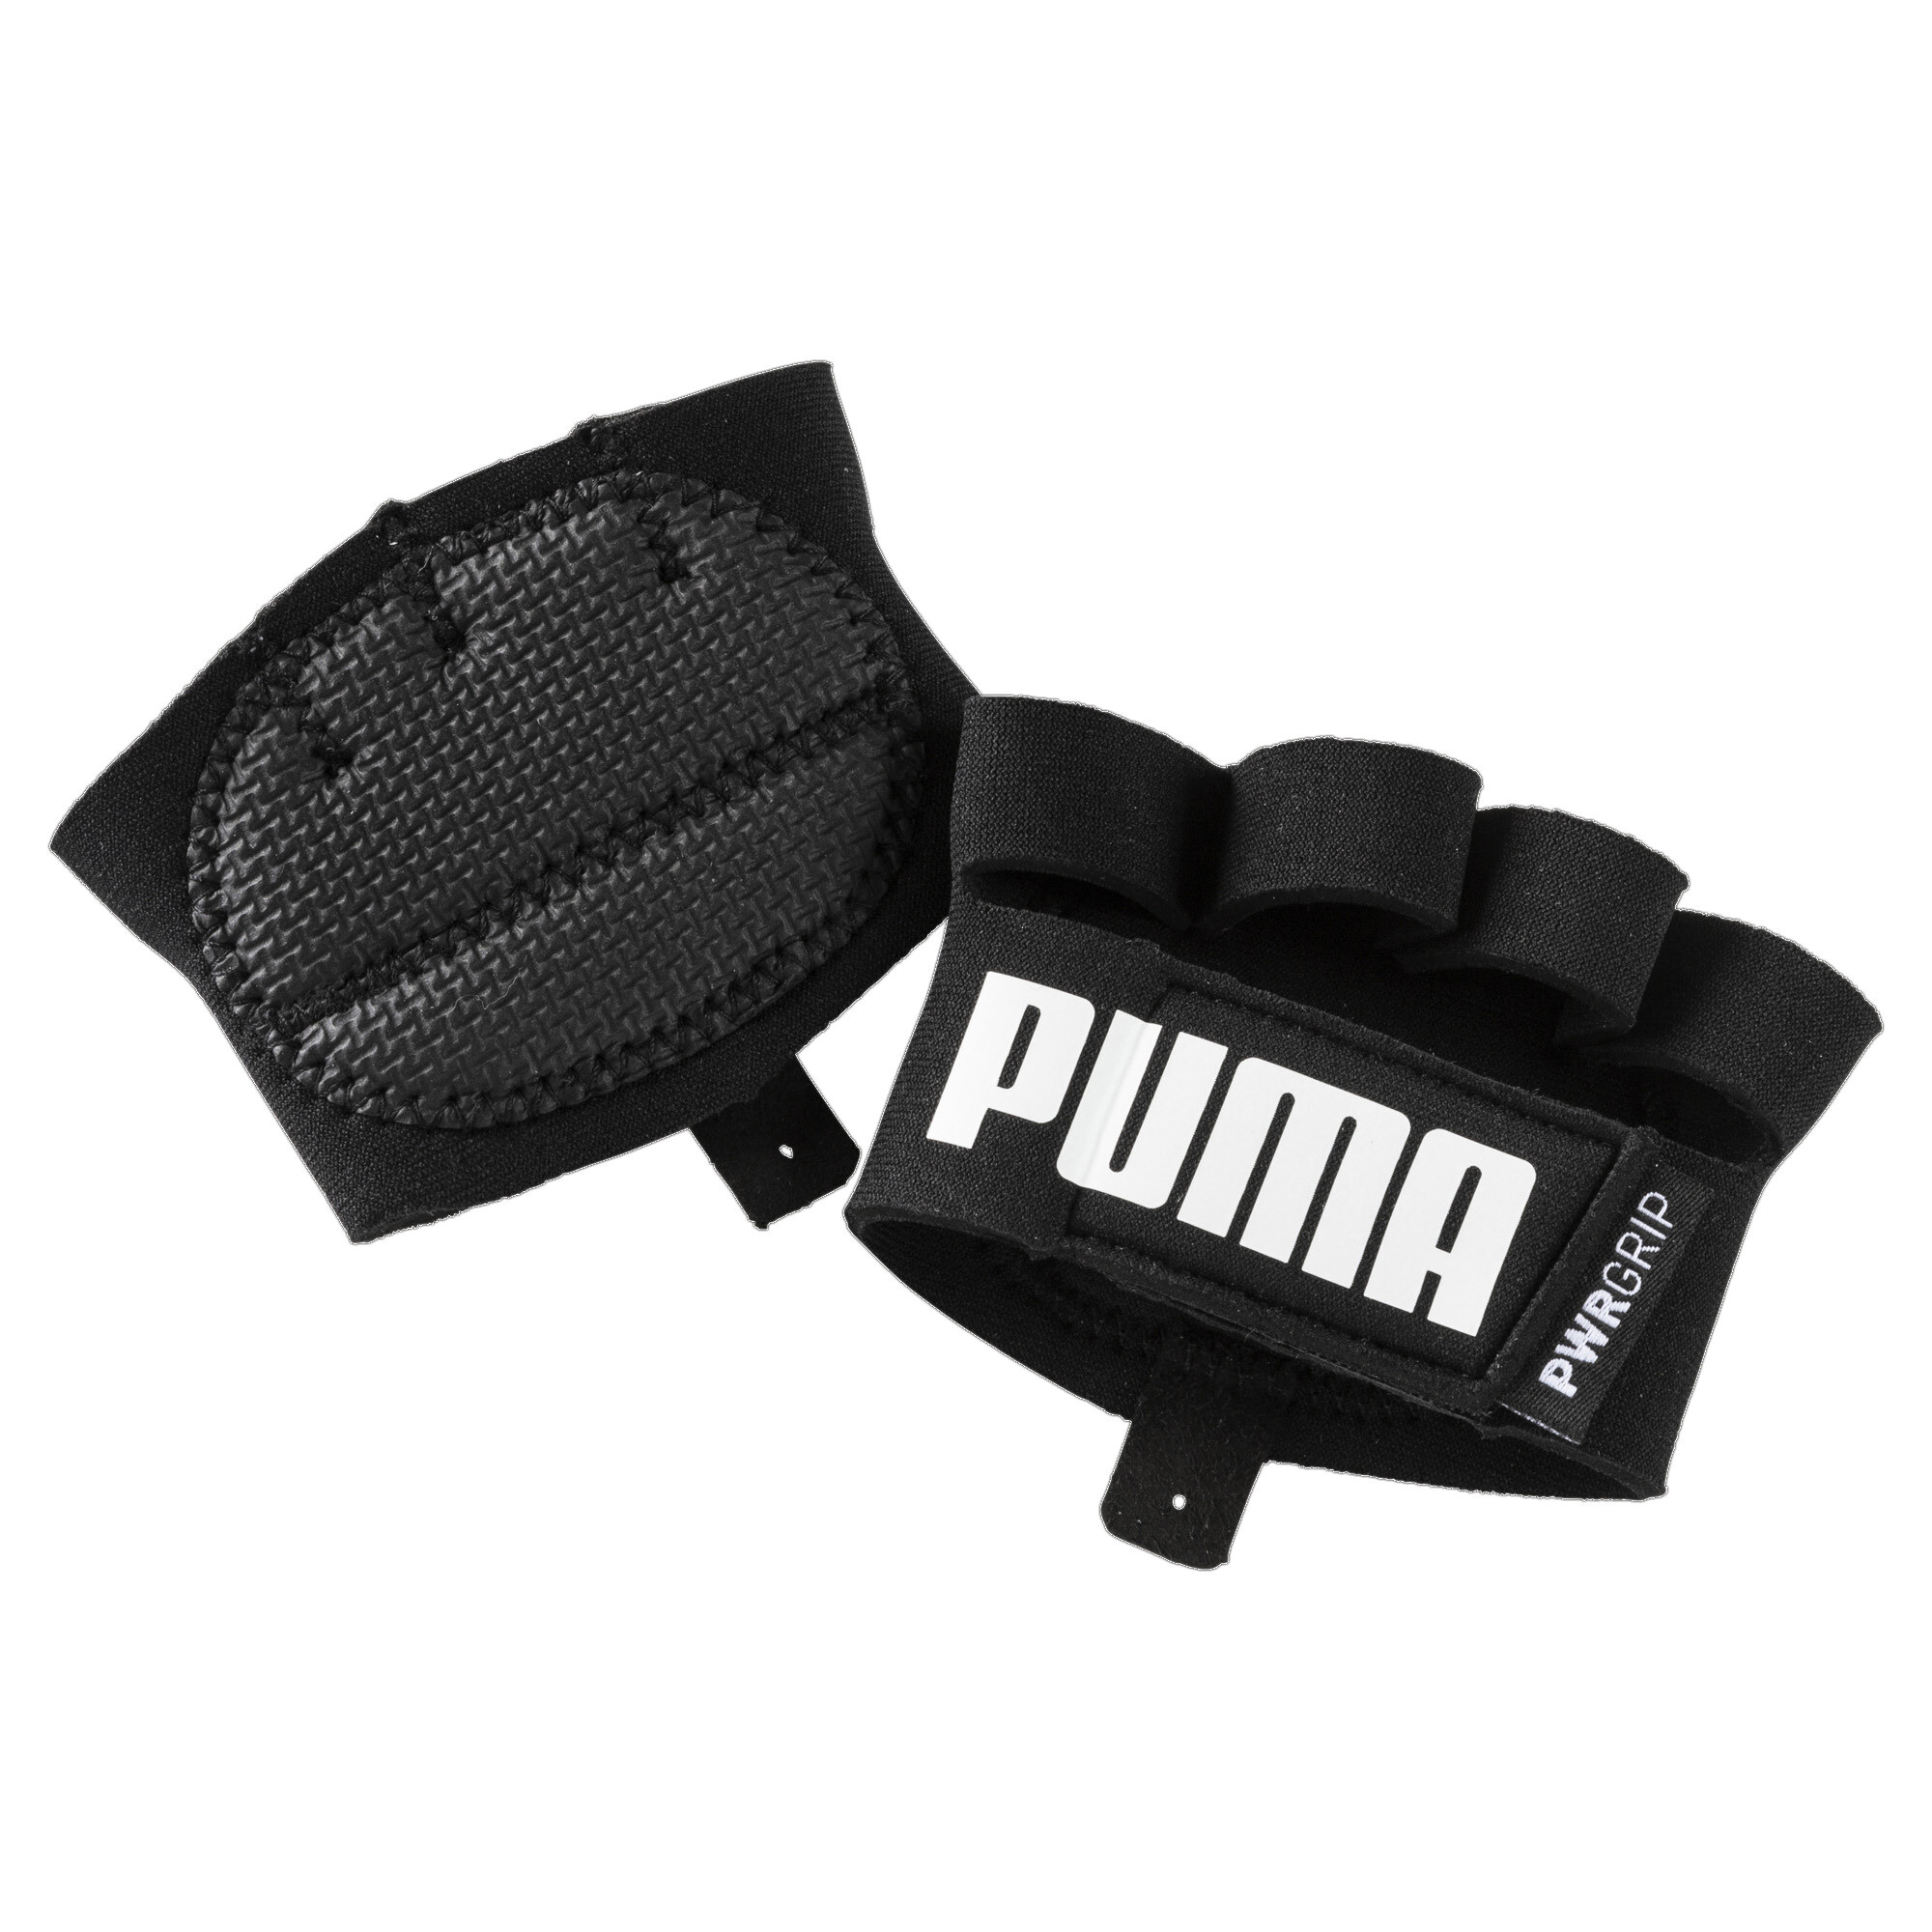 Men's PUMA Essential Training Grip Gloves In Black, Size Medium